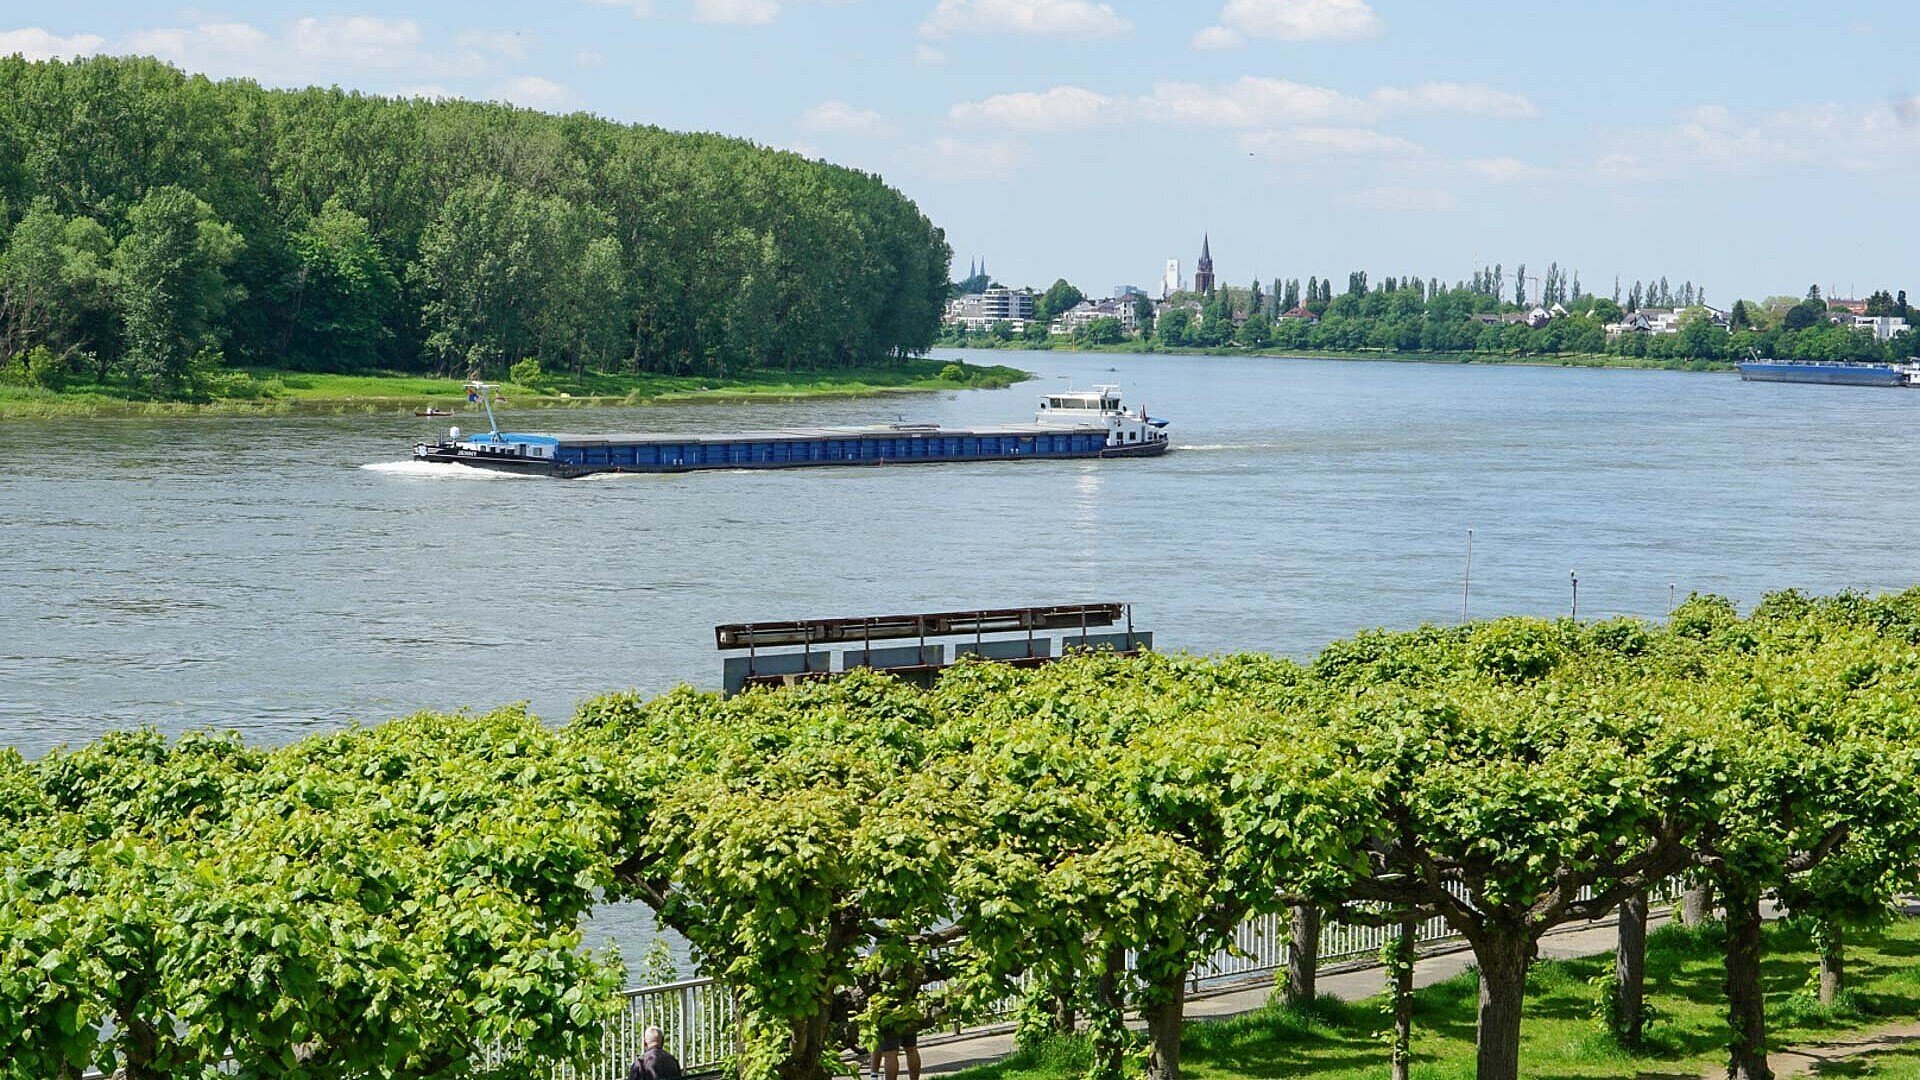 Sommerliches Rheinufer in Köln-Porz